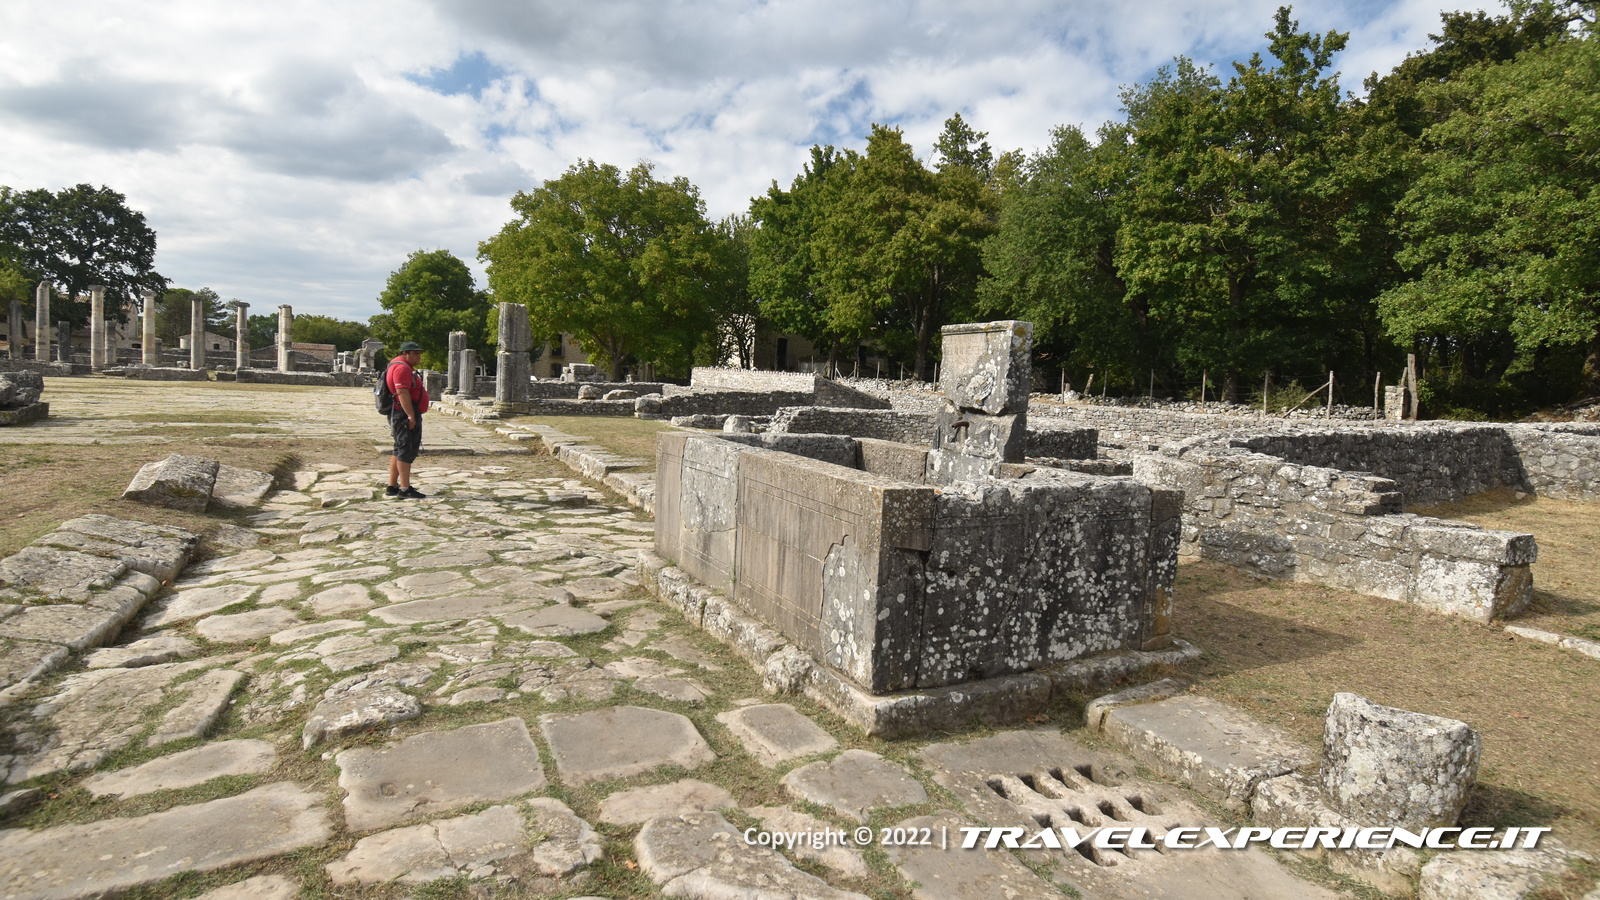 Strada romana e Fontana del Grifone del sito archeologico di Altilia-Saepinum, Sepino